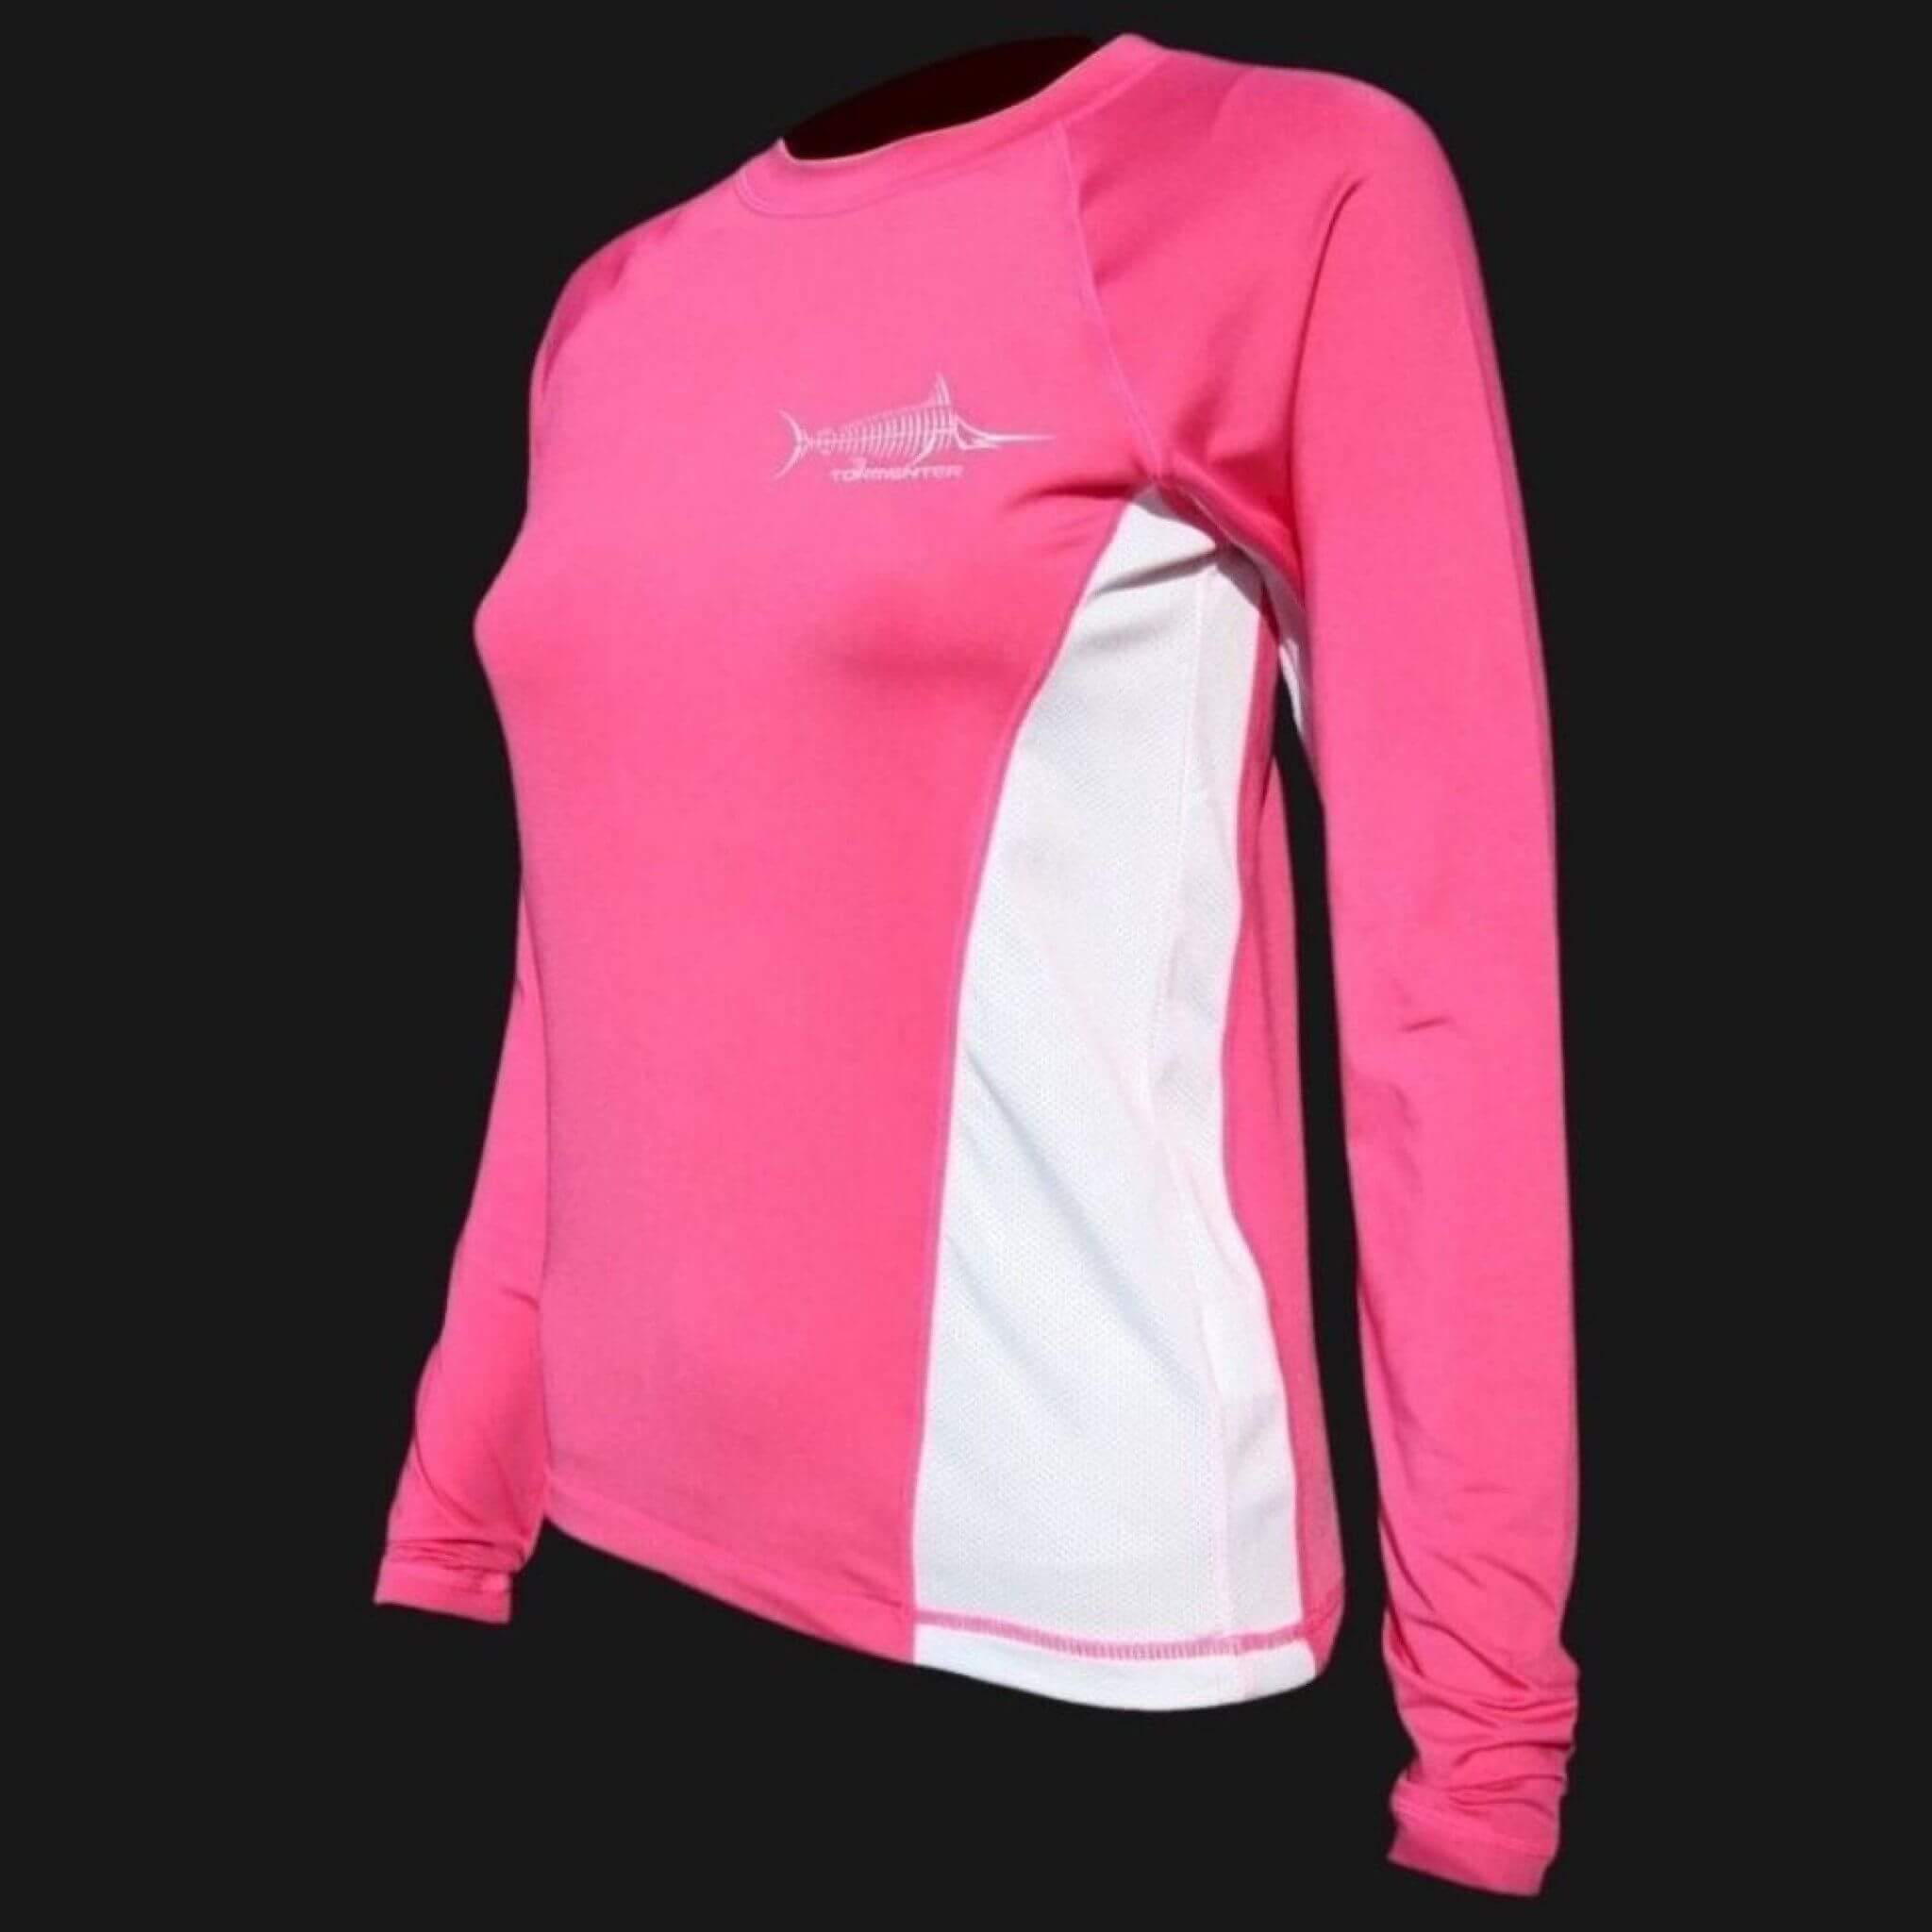 Women's SPF-50 Performance Shirt - Pink Marlin